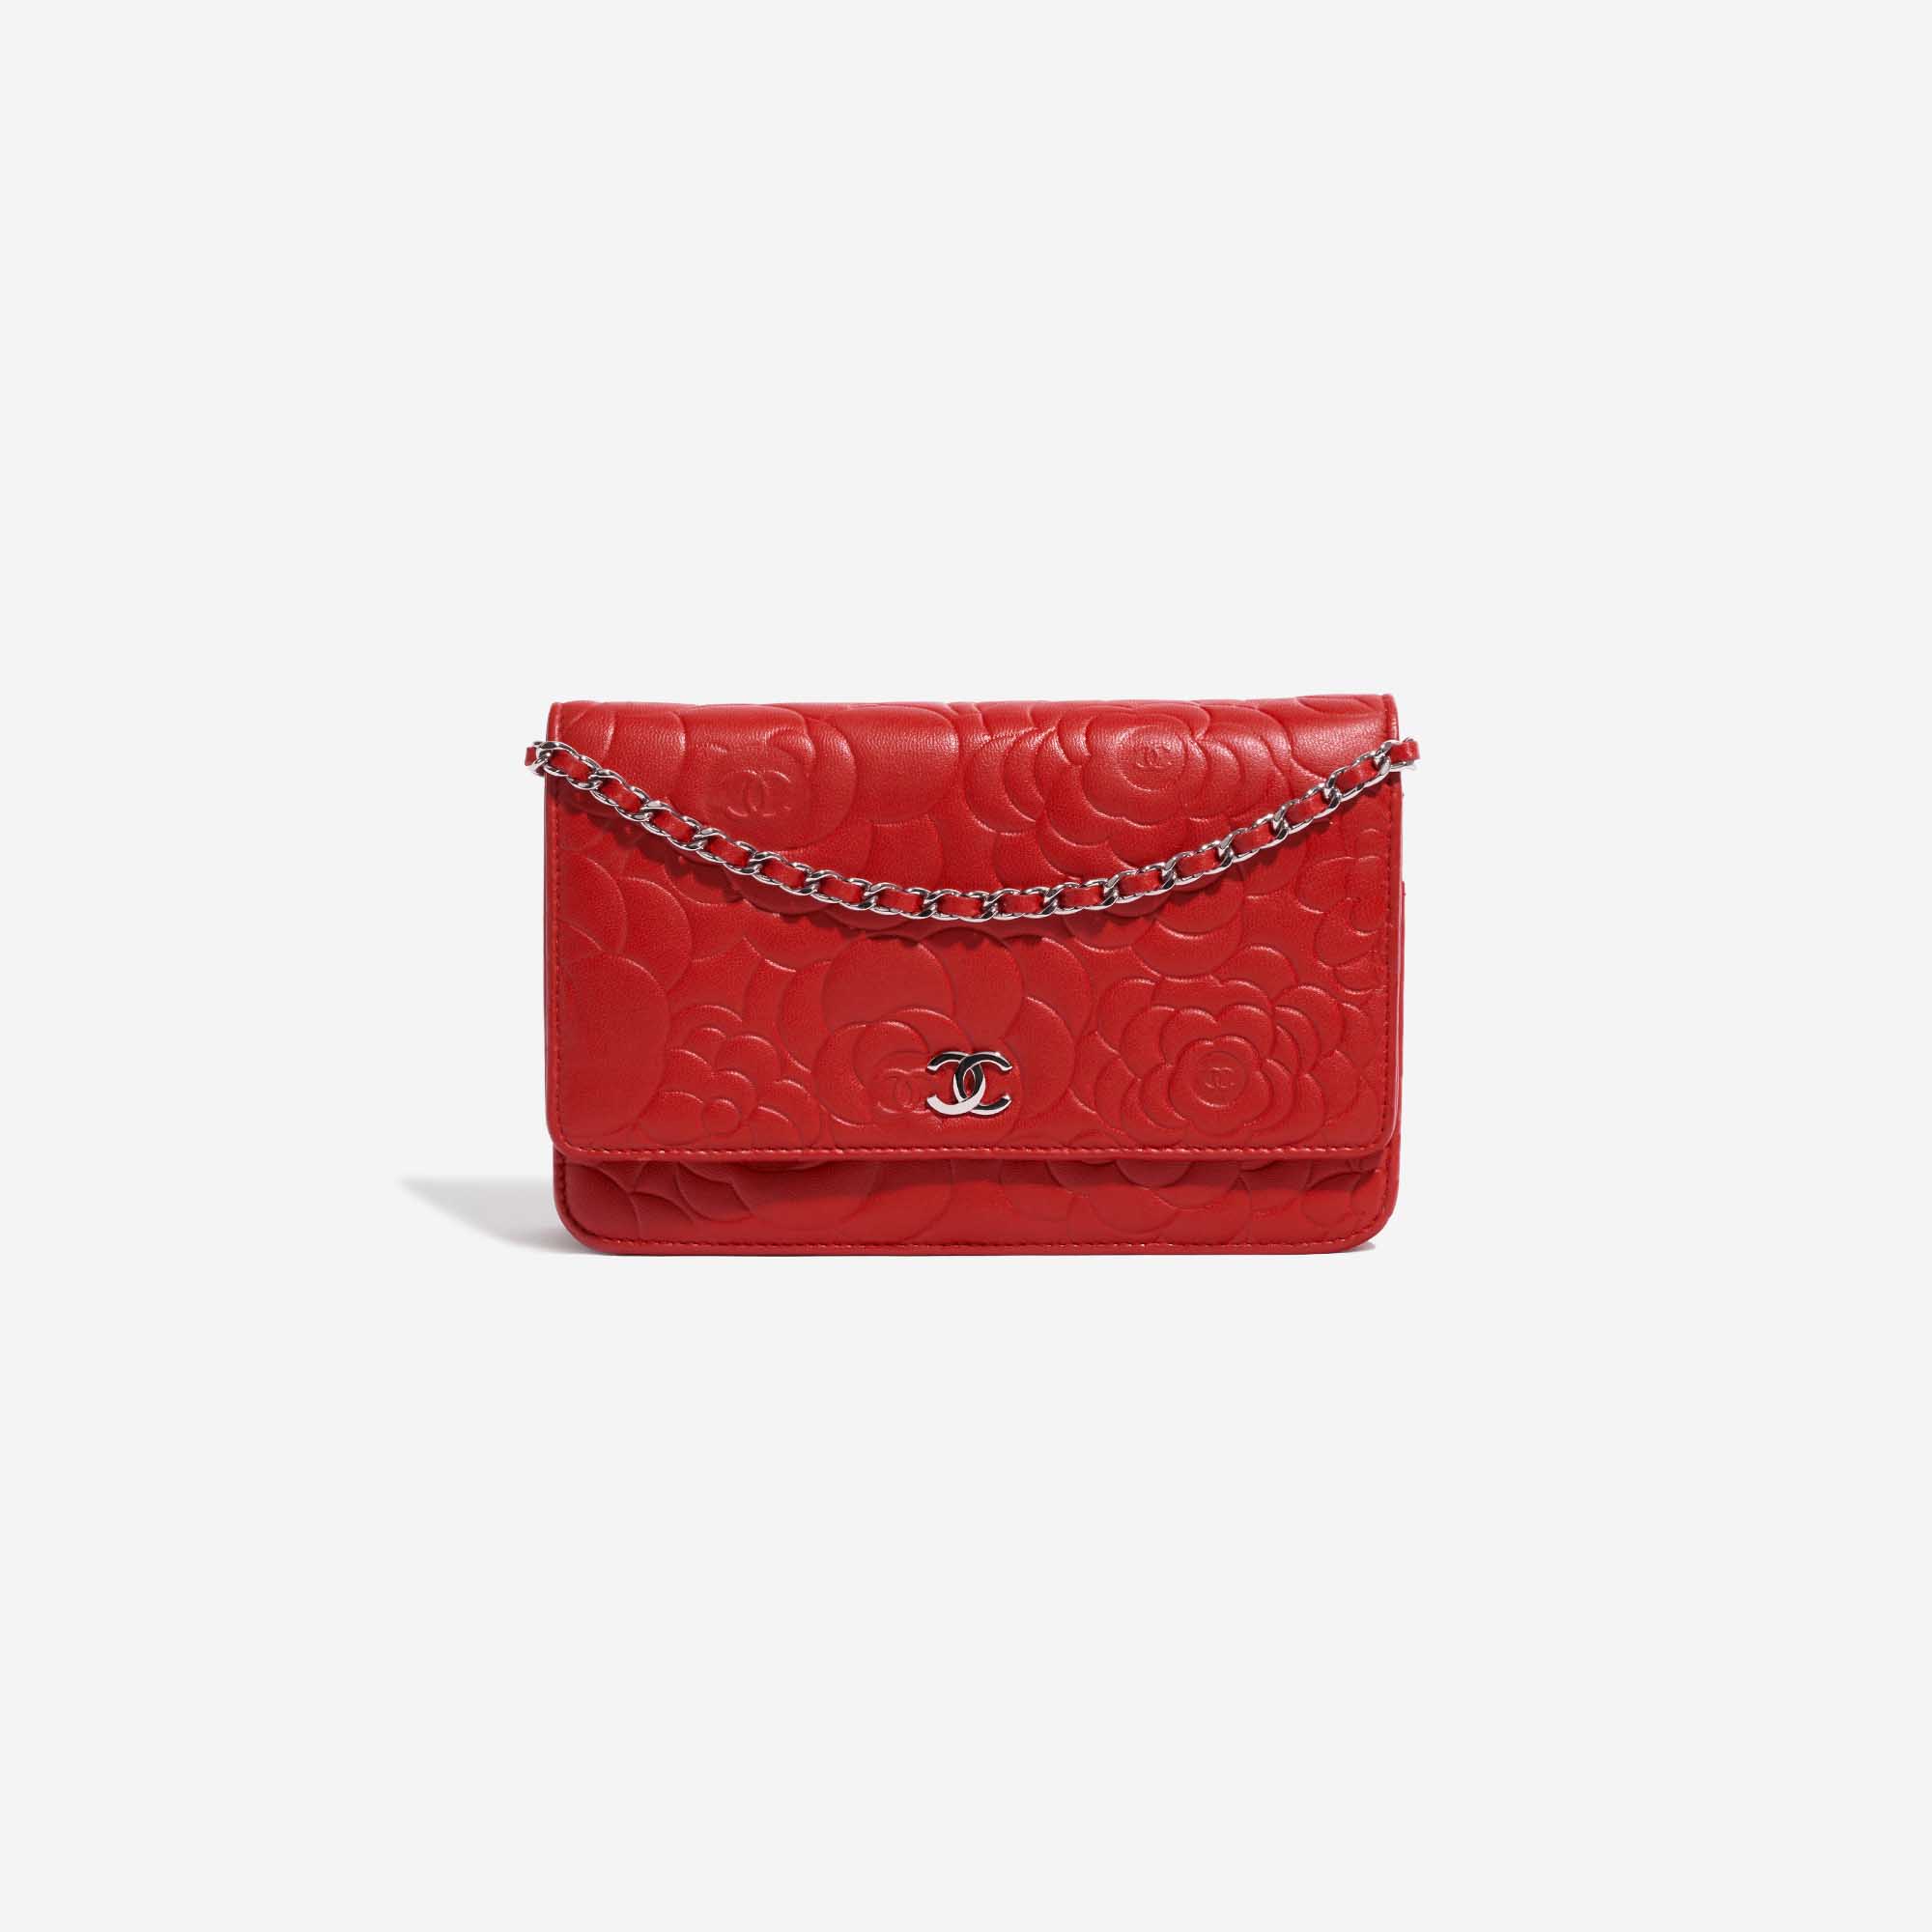 Sac Chanel d'occasion WOC Agneau Camélia Rouge Rouge Devant | Vendez votre sac de créateur sur Saclab.com